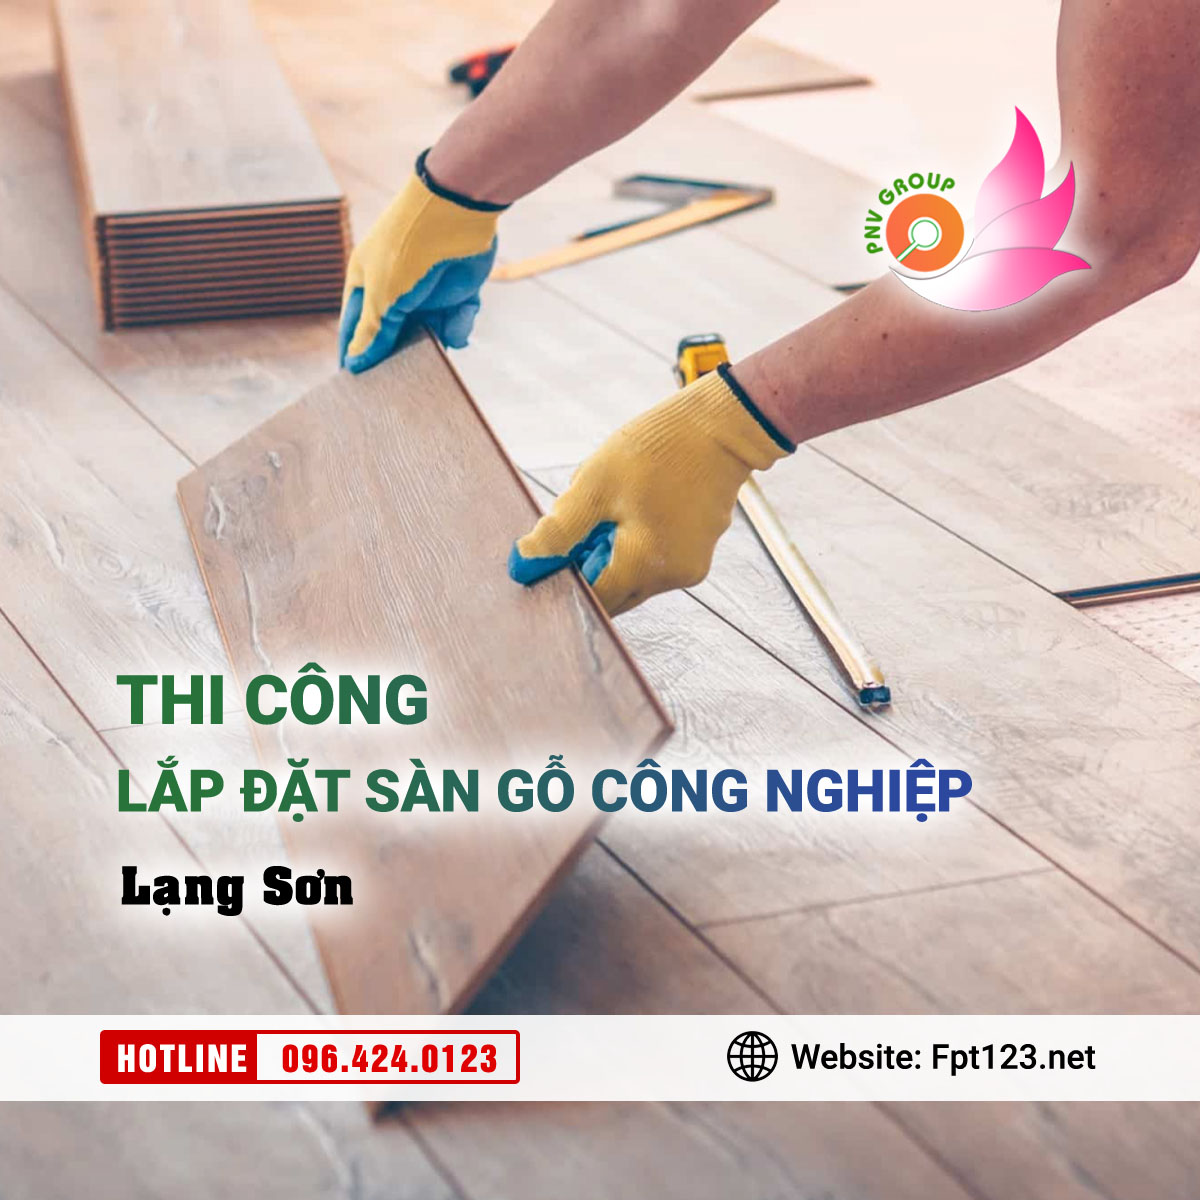 Thi công, lắp đặt sàn gỗ công nghiệp tại Lạng Sơn